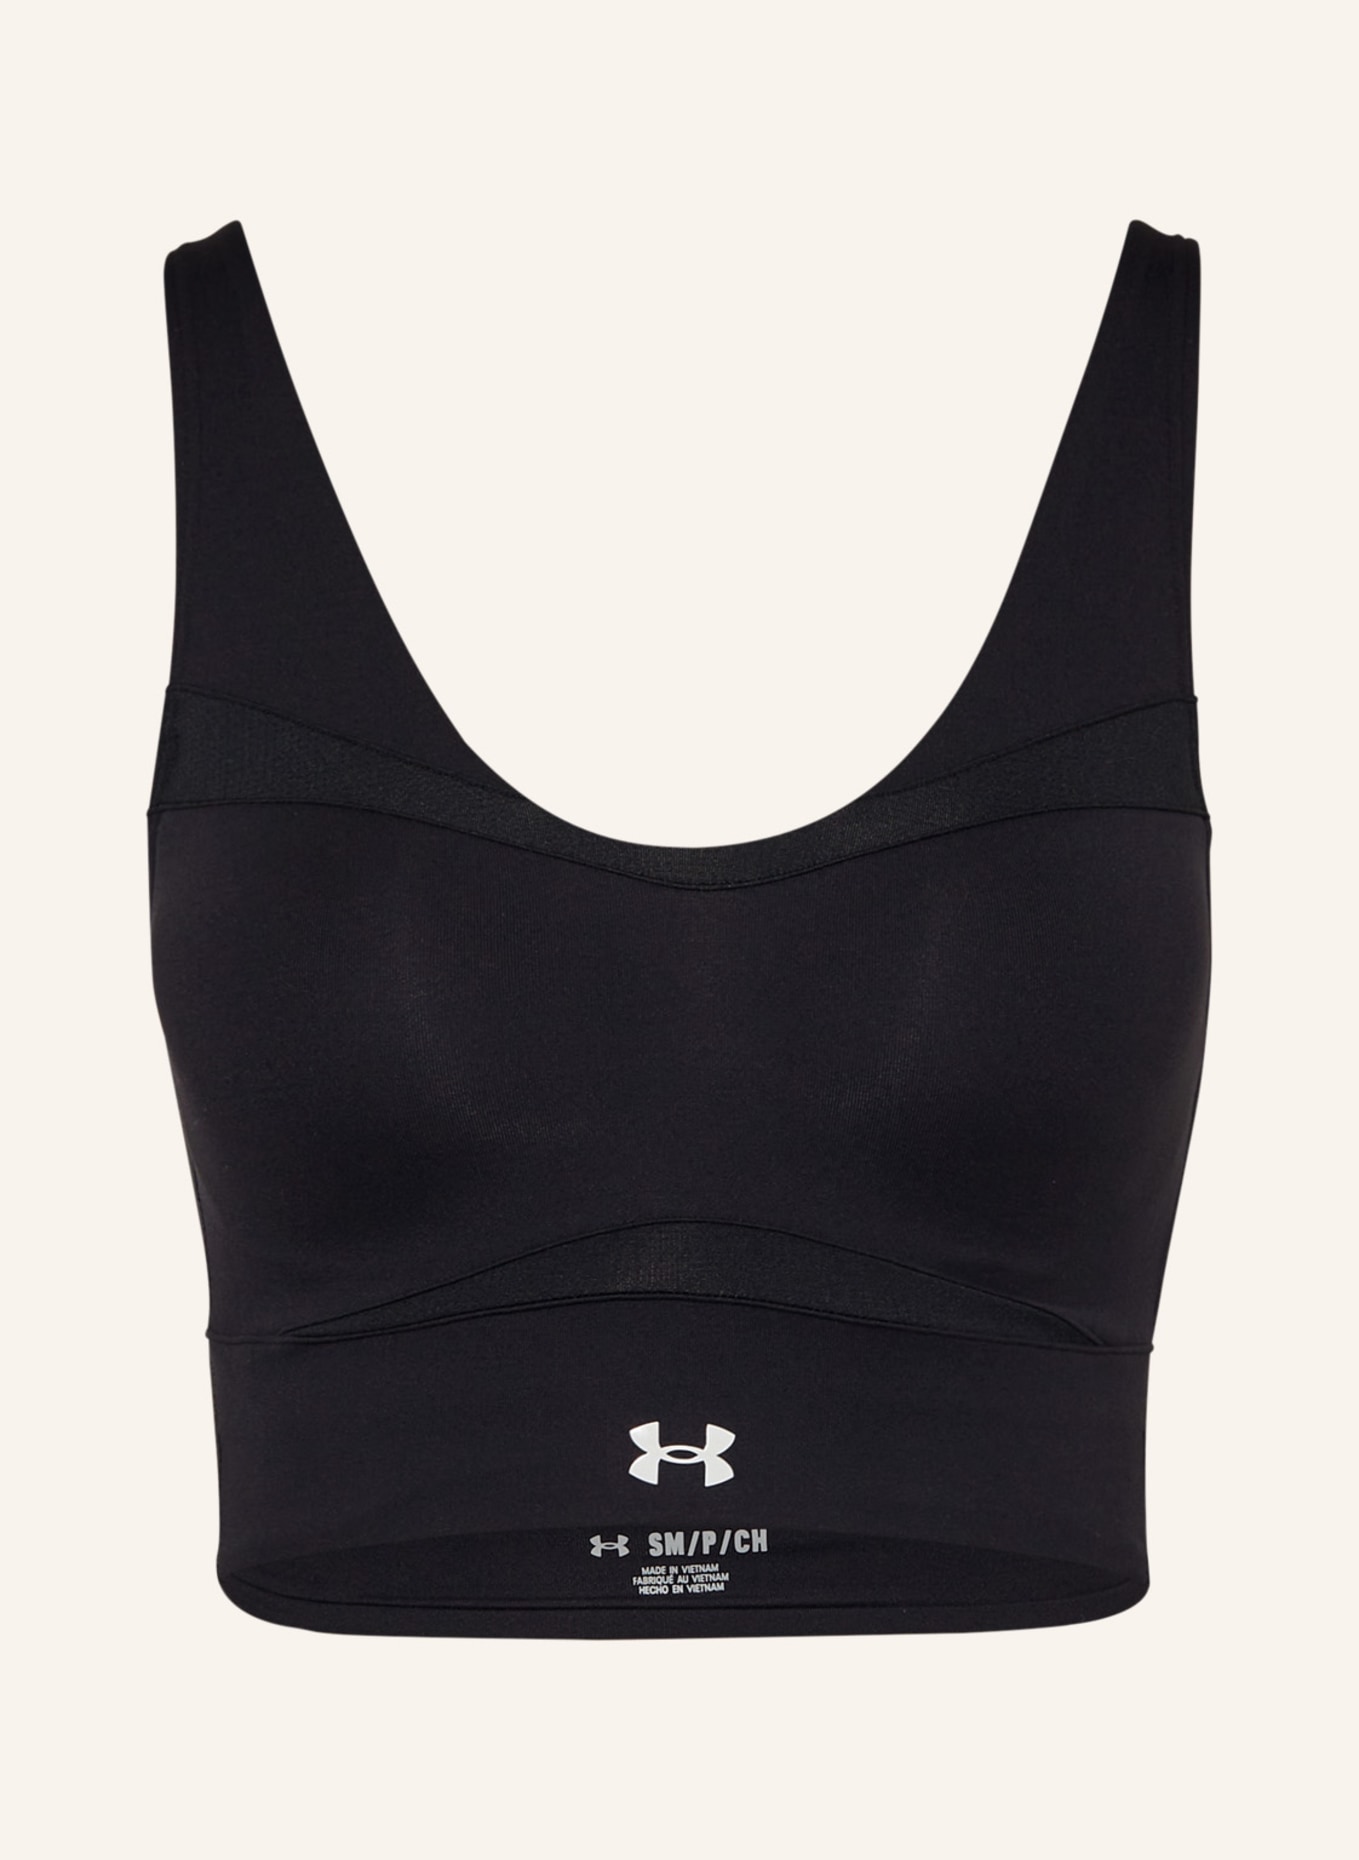 UNDER ARMOUR Sports bra SMARTFORM EVOLUTION with mesh, Color: BLACK (Image 1)